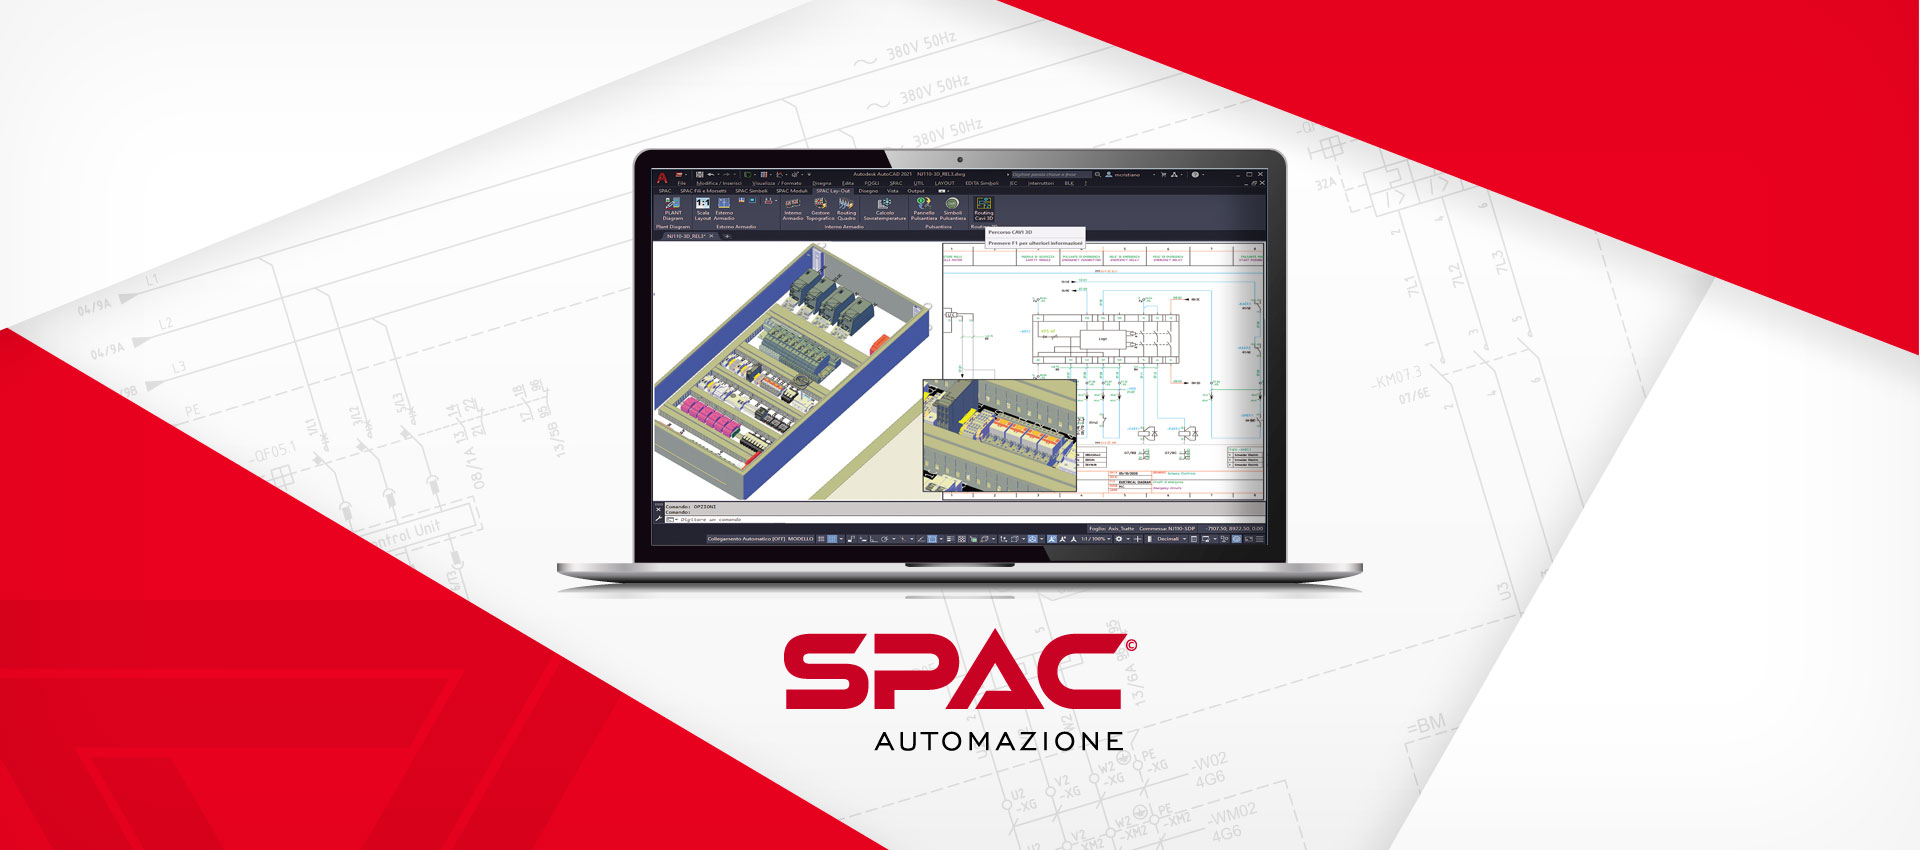 Il software SPAC Automazione per la gestione di progetti industriali